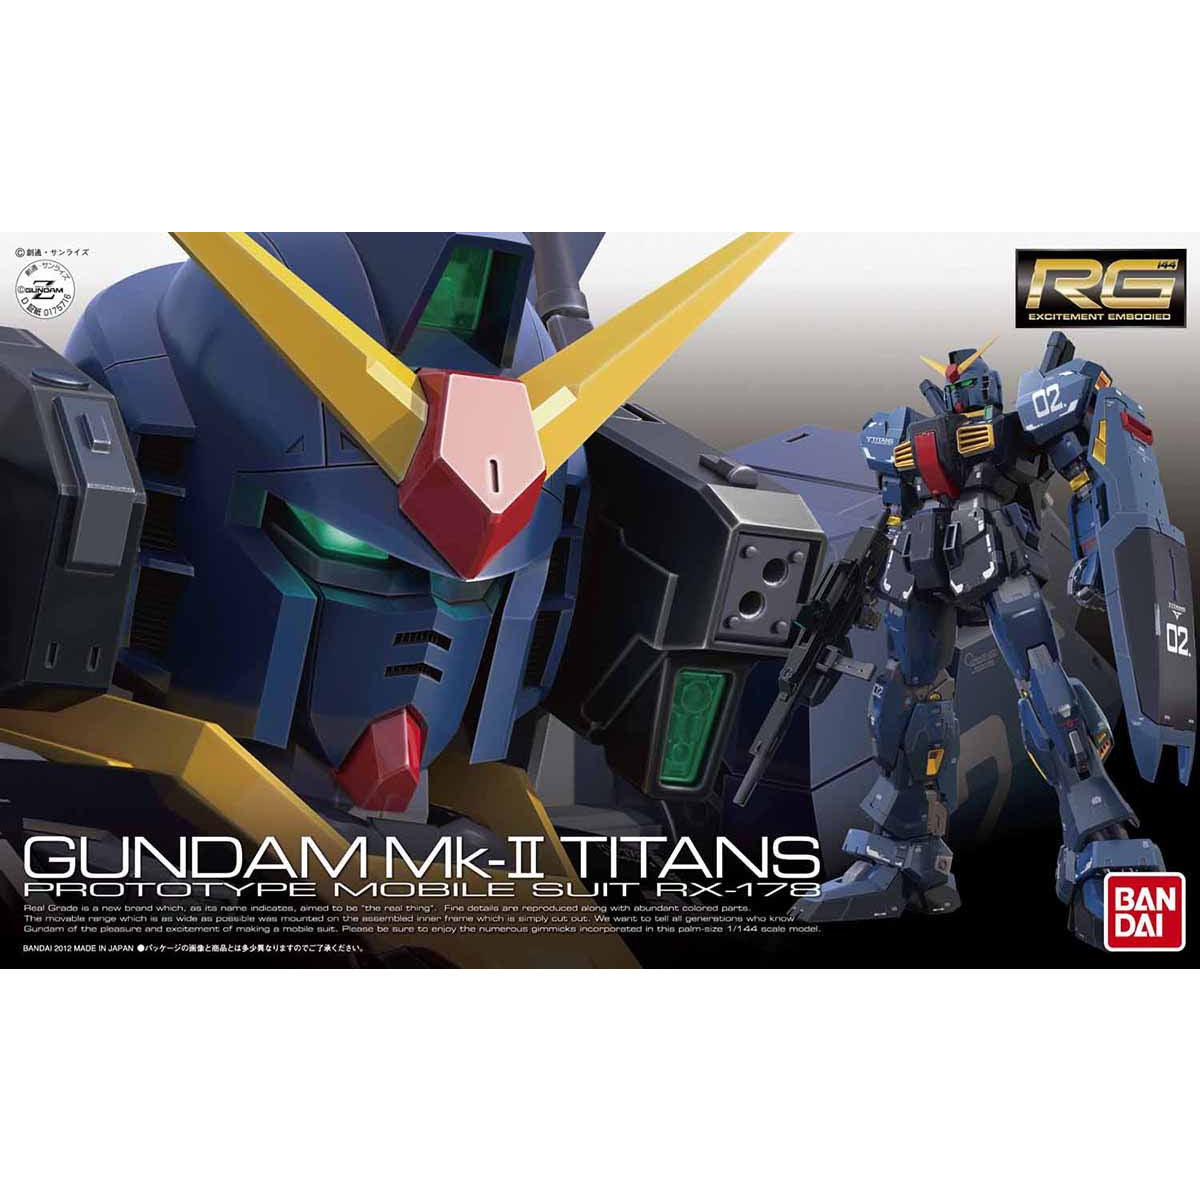 Gundam model kit - Freedom gundam RG maquette - gunpla retro - Bandai